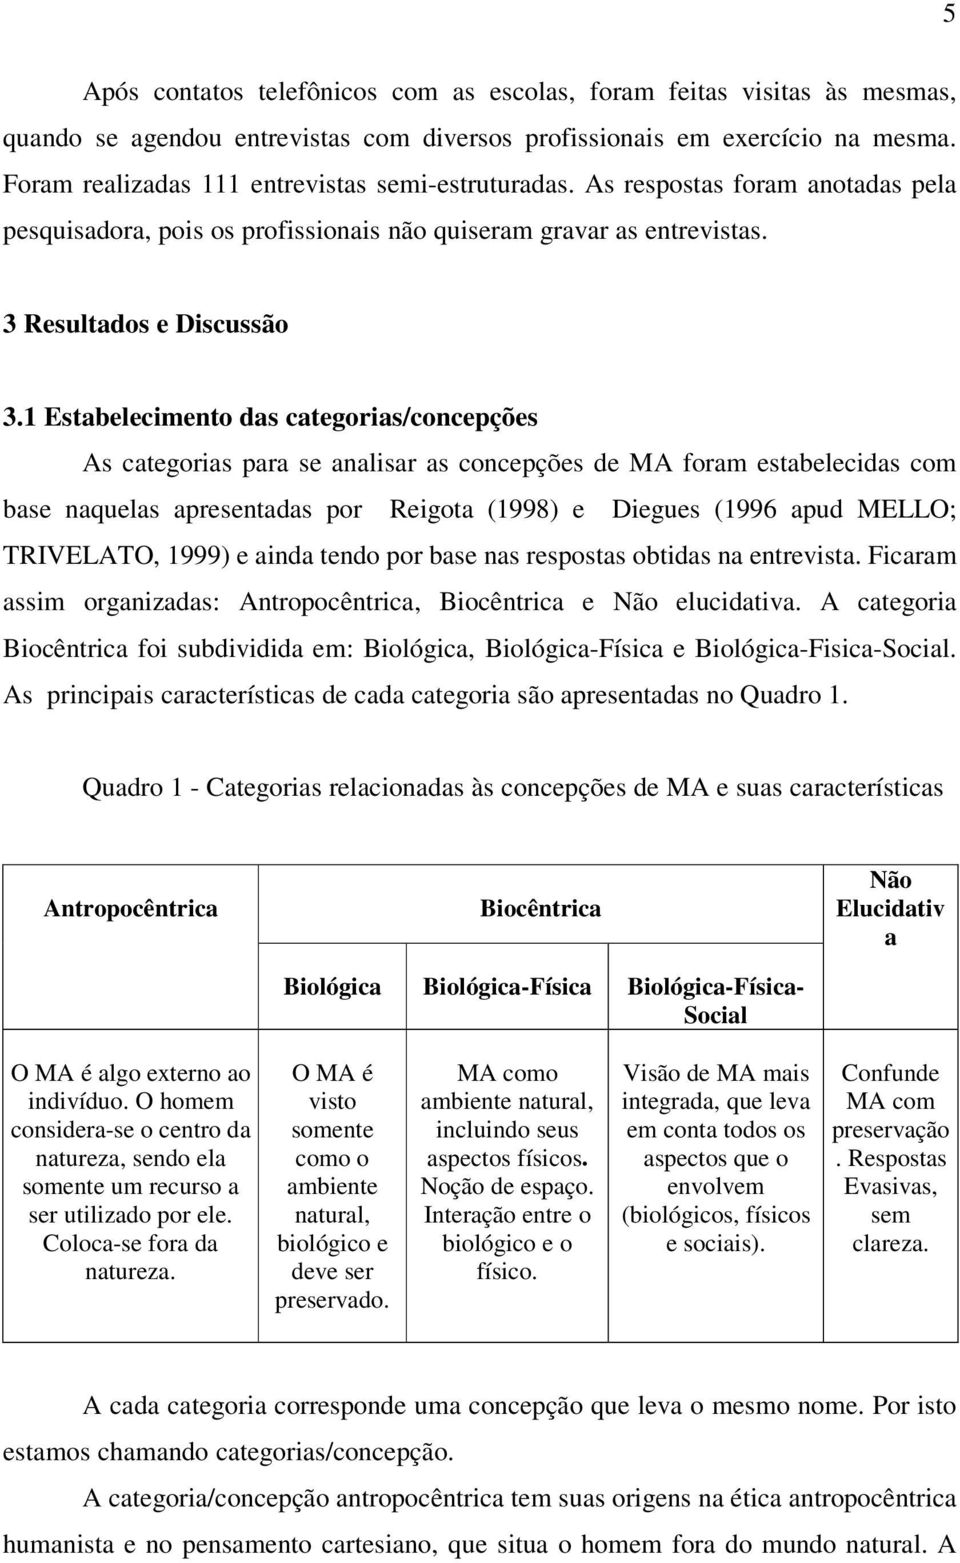 1 Estabelecimento das categorias/concepções As categorias para se analisar as concepções de MA foram estabelecidas com base naquelas apresentadas por Reigota (1998) e Diegues (1996 apud MELLO;